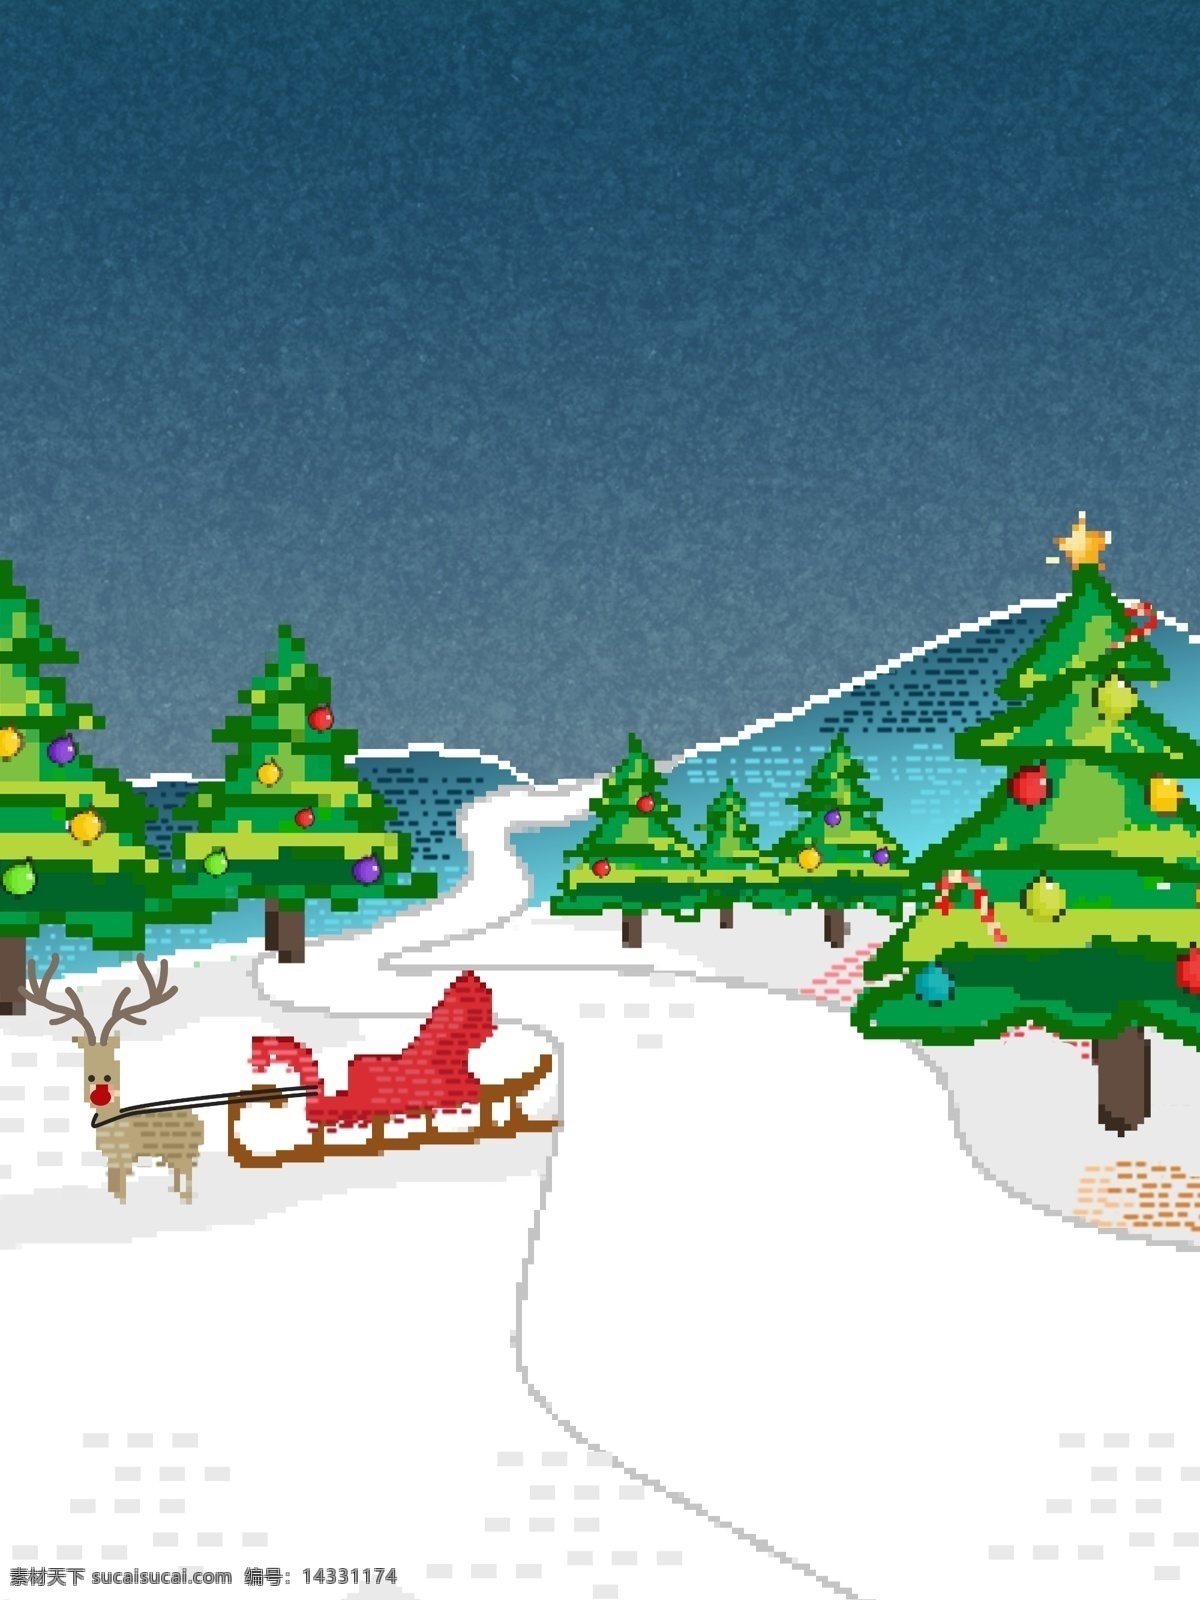 创意 圣诞 背景 像素 化 卡通背景 圣诞背景 圣诞节背景 圣诞树 彩绘背景 雪橇 像素化设计 80年代复古 复古像素化